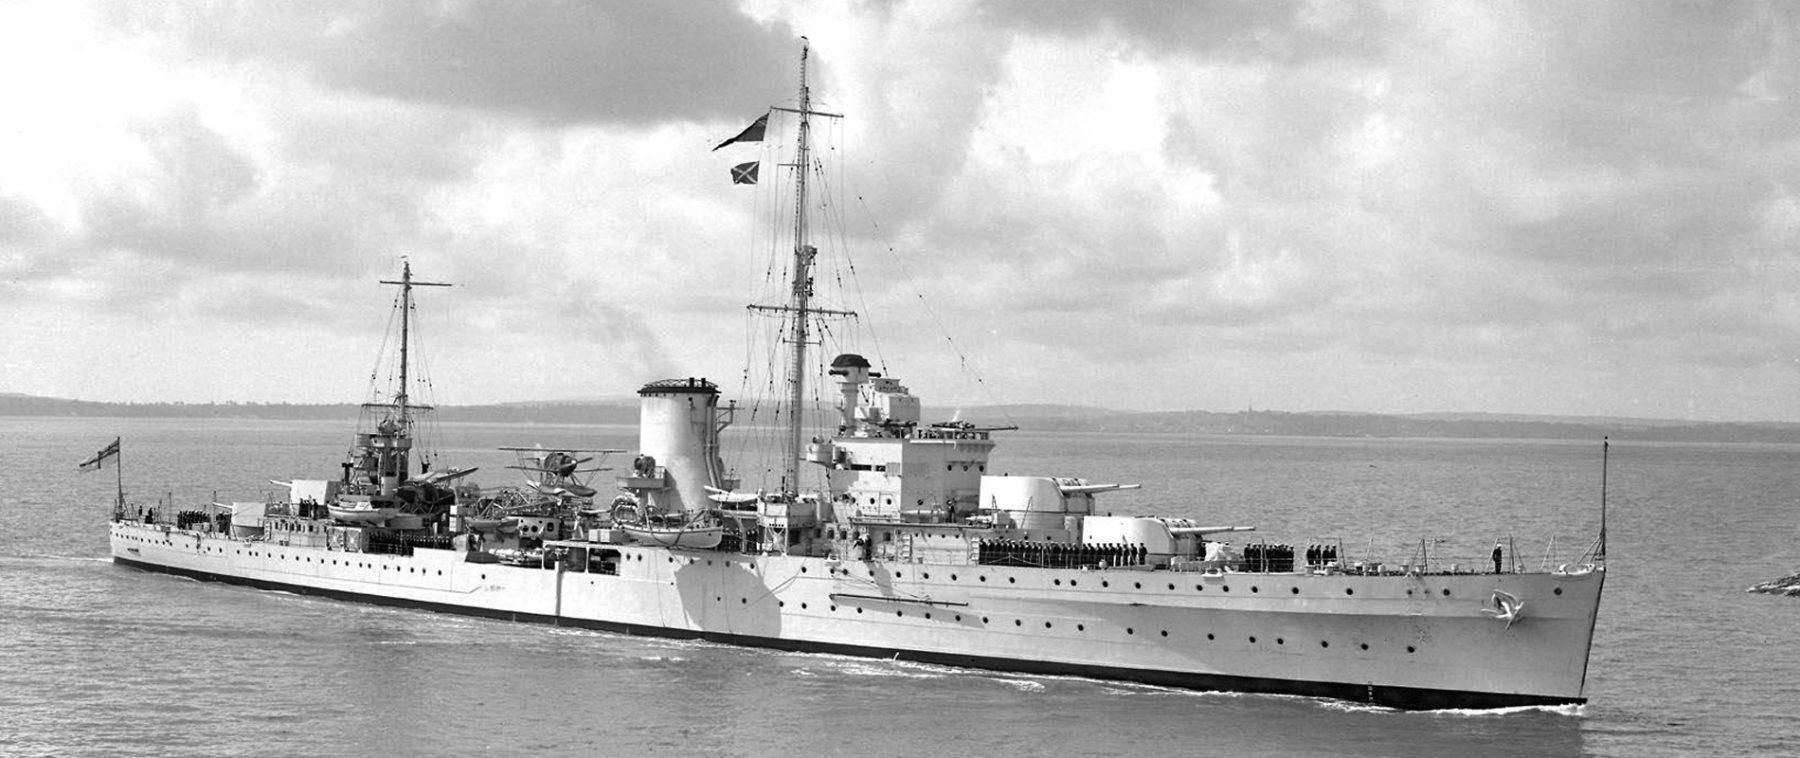 HMS Ajax before the war, circa 1936